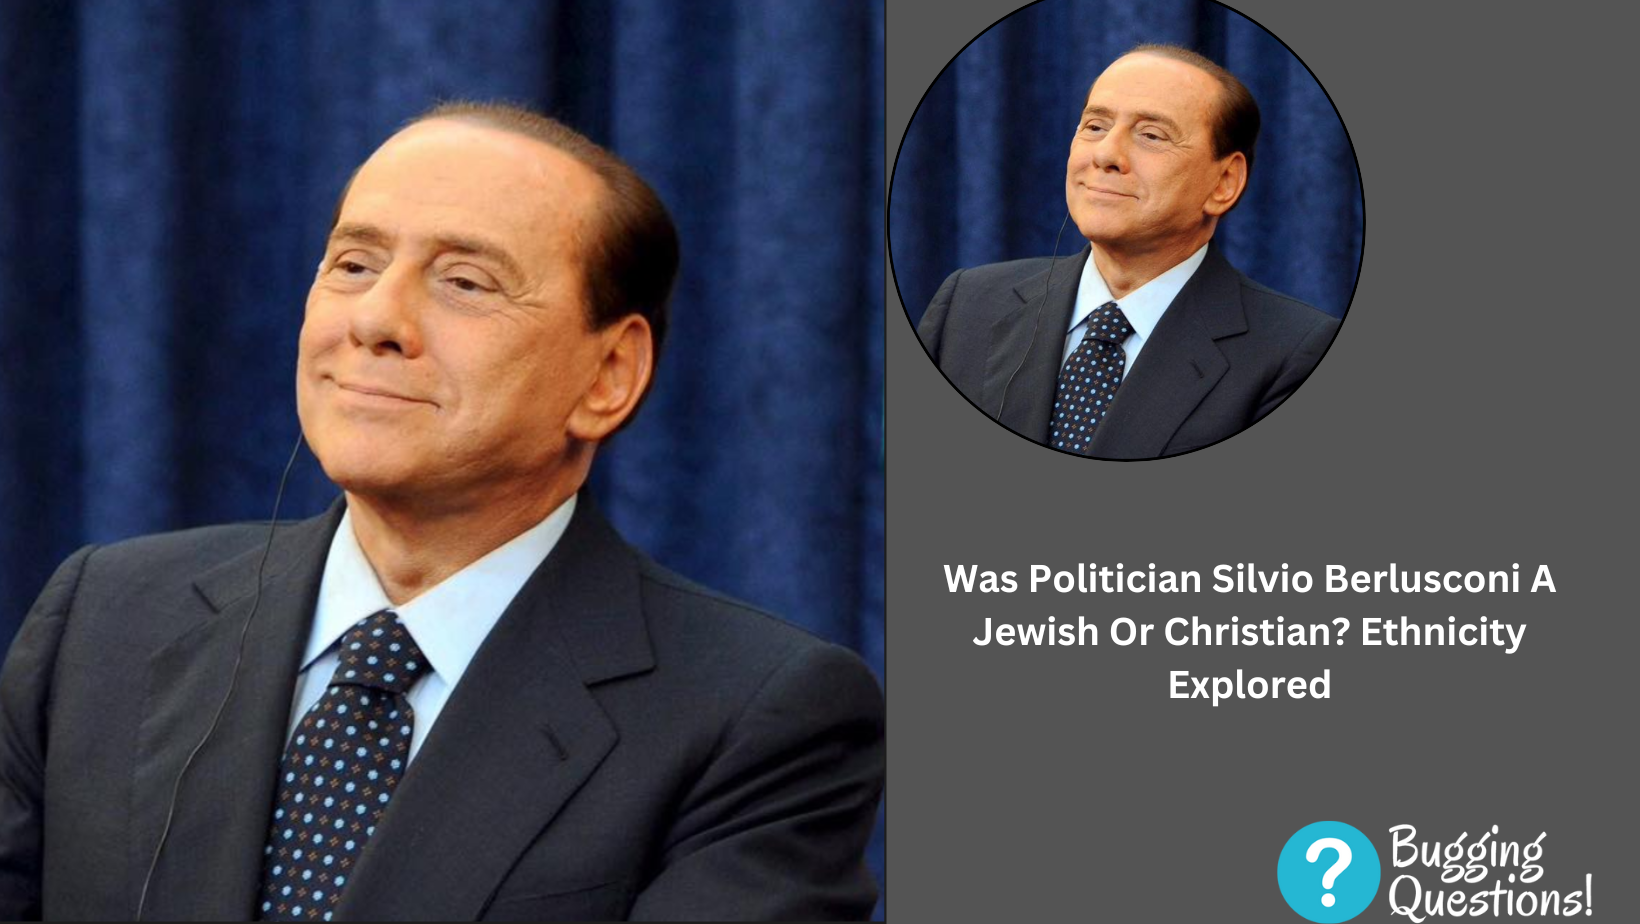 Was Politician Silvio Berlusconi A Jewish Or Christian?